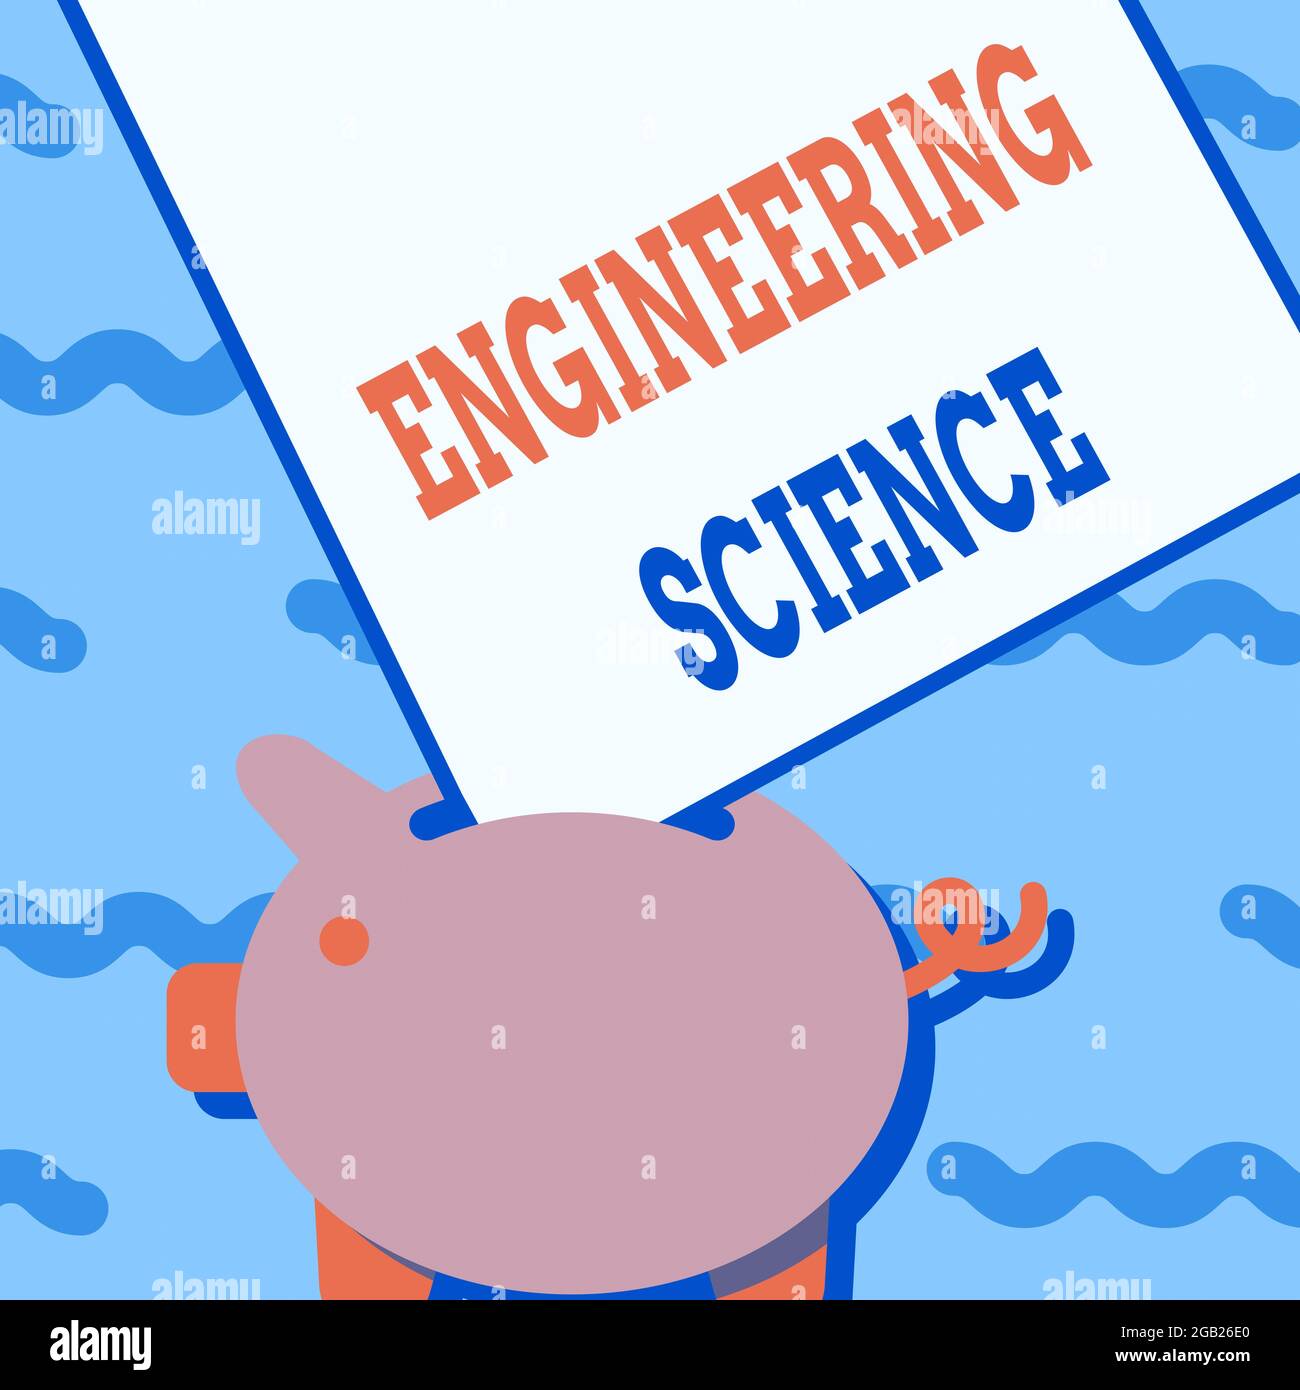 Titolo concettuale Engineering Science. Parola per trattare con basi fisiche e matematiche di ingegneria Piggy Bank disegno con grande foglio di carta Foto Stock